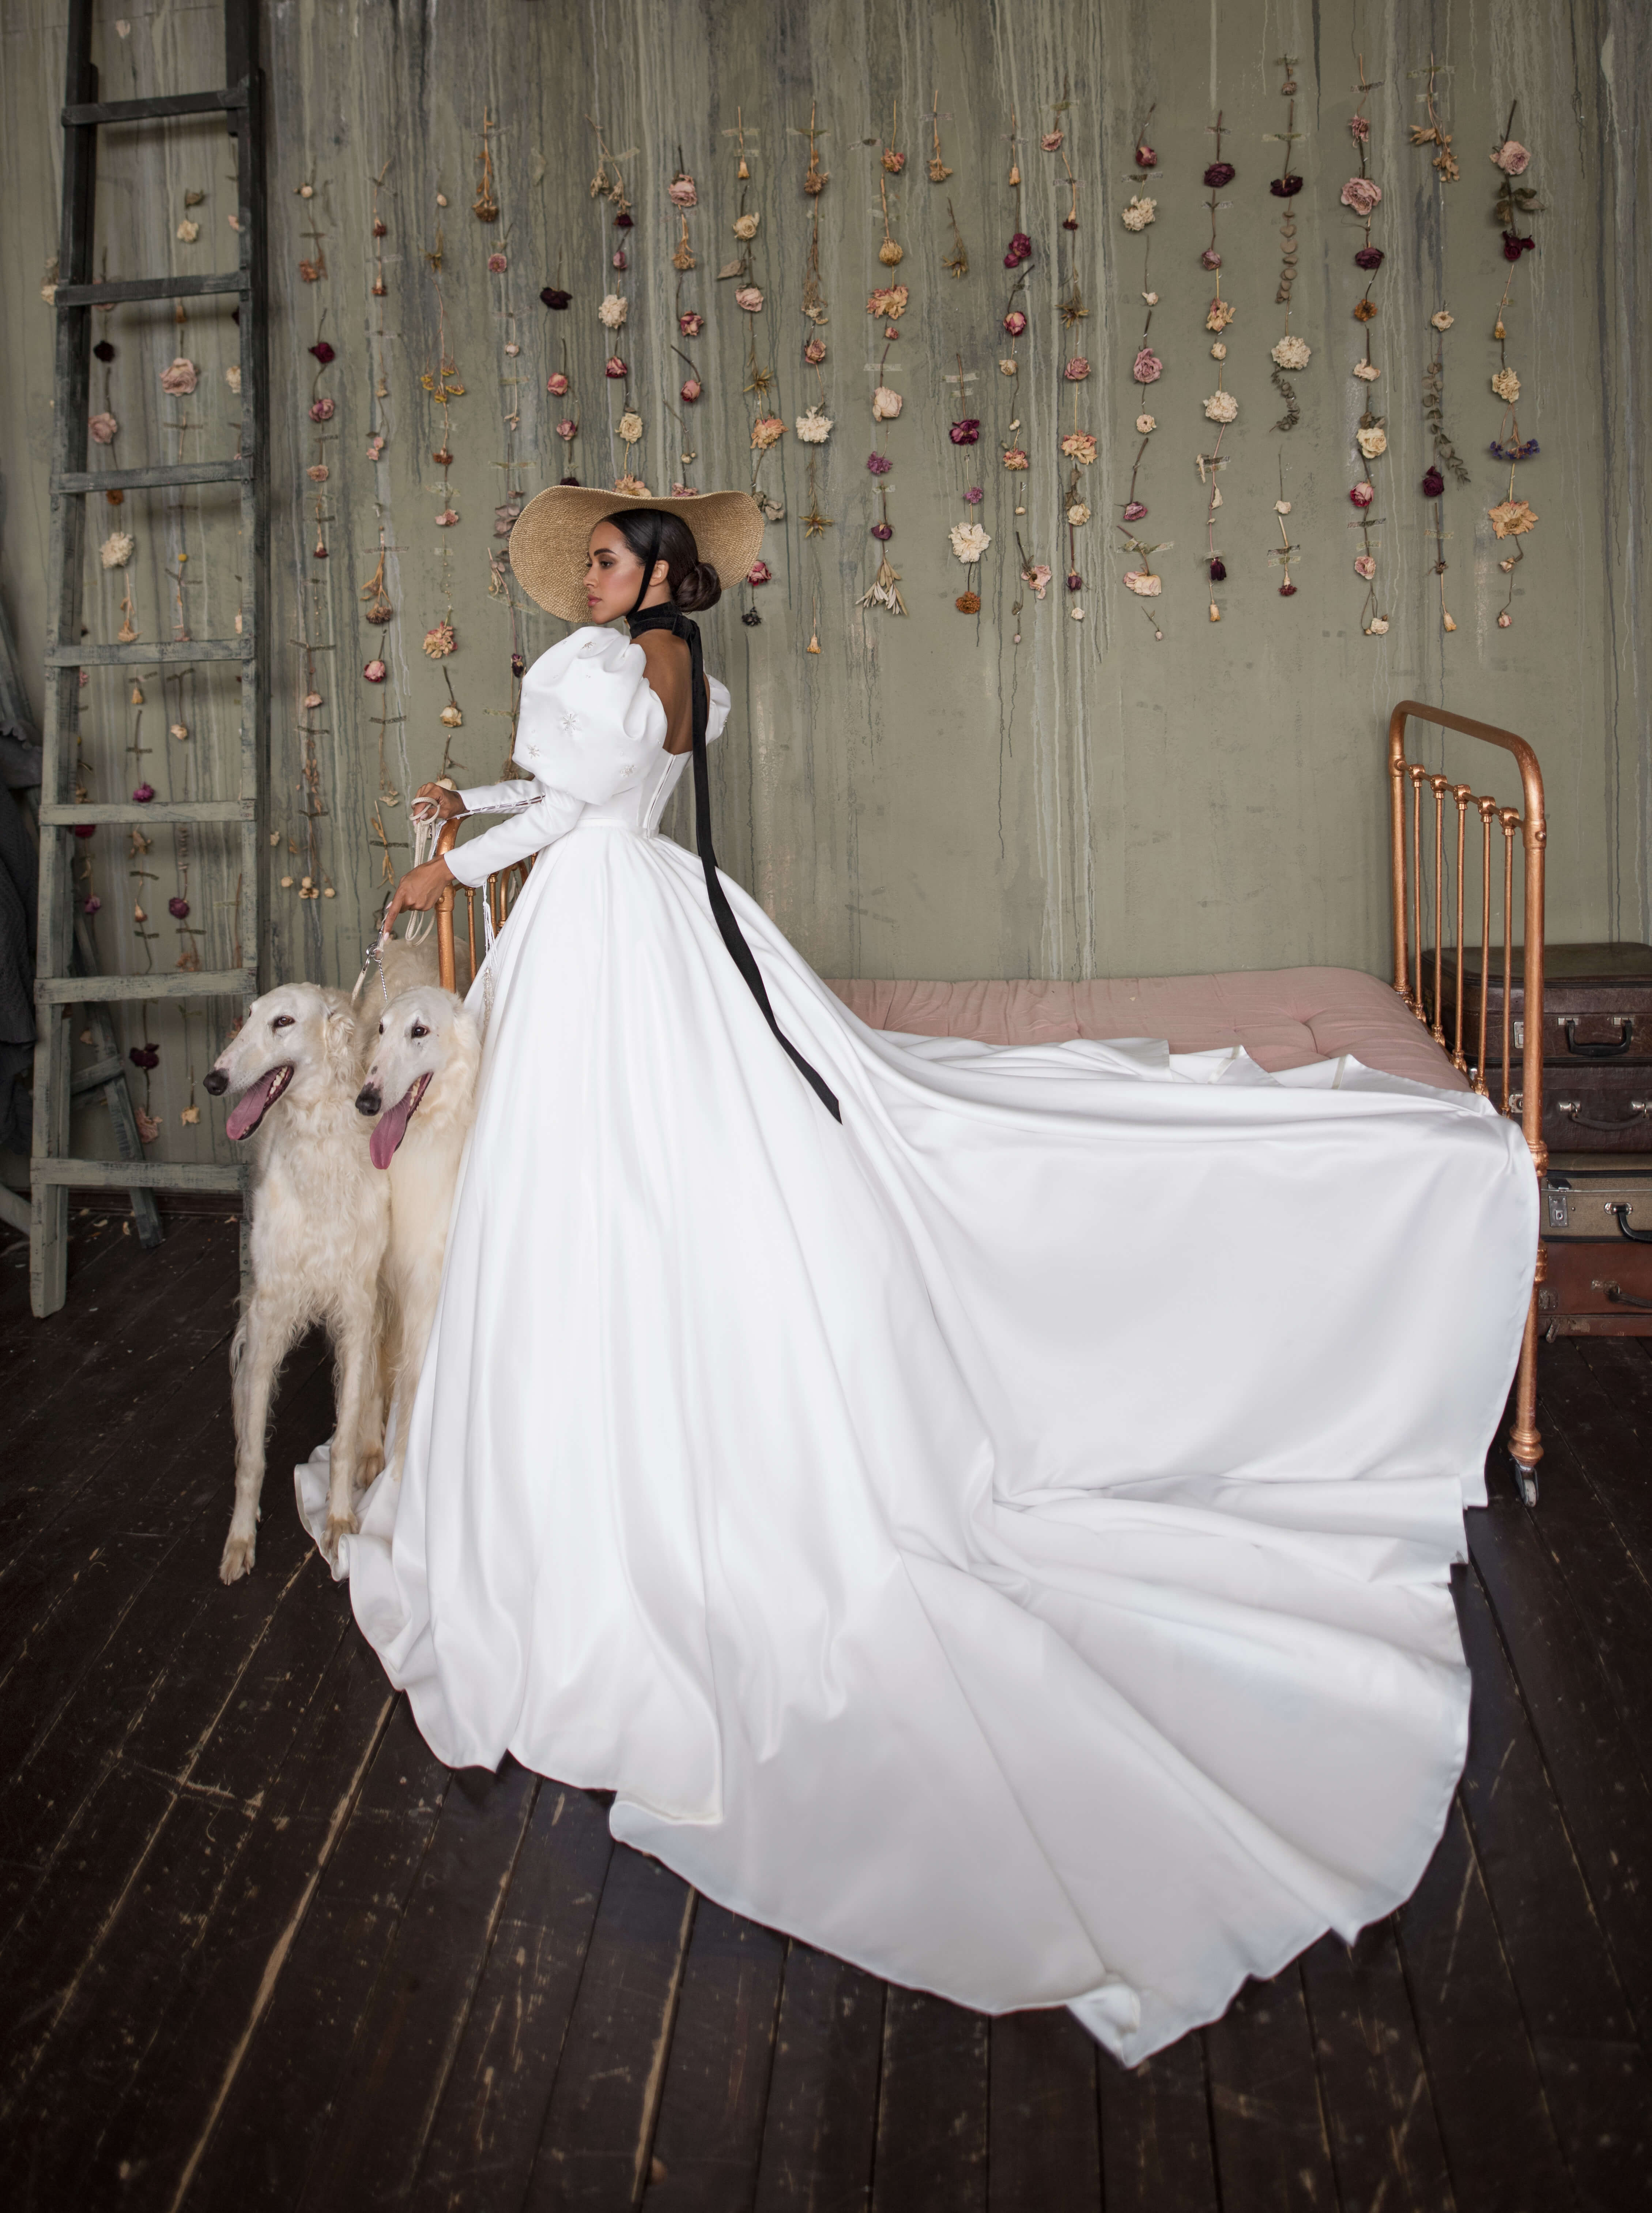 Купить свадебное платье «Итан» Бламмо Биамо из коллекции Нимфа 2020 года в Воронеже